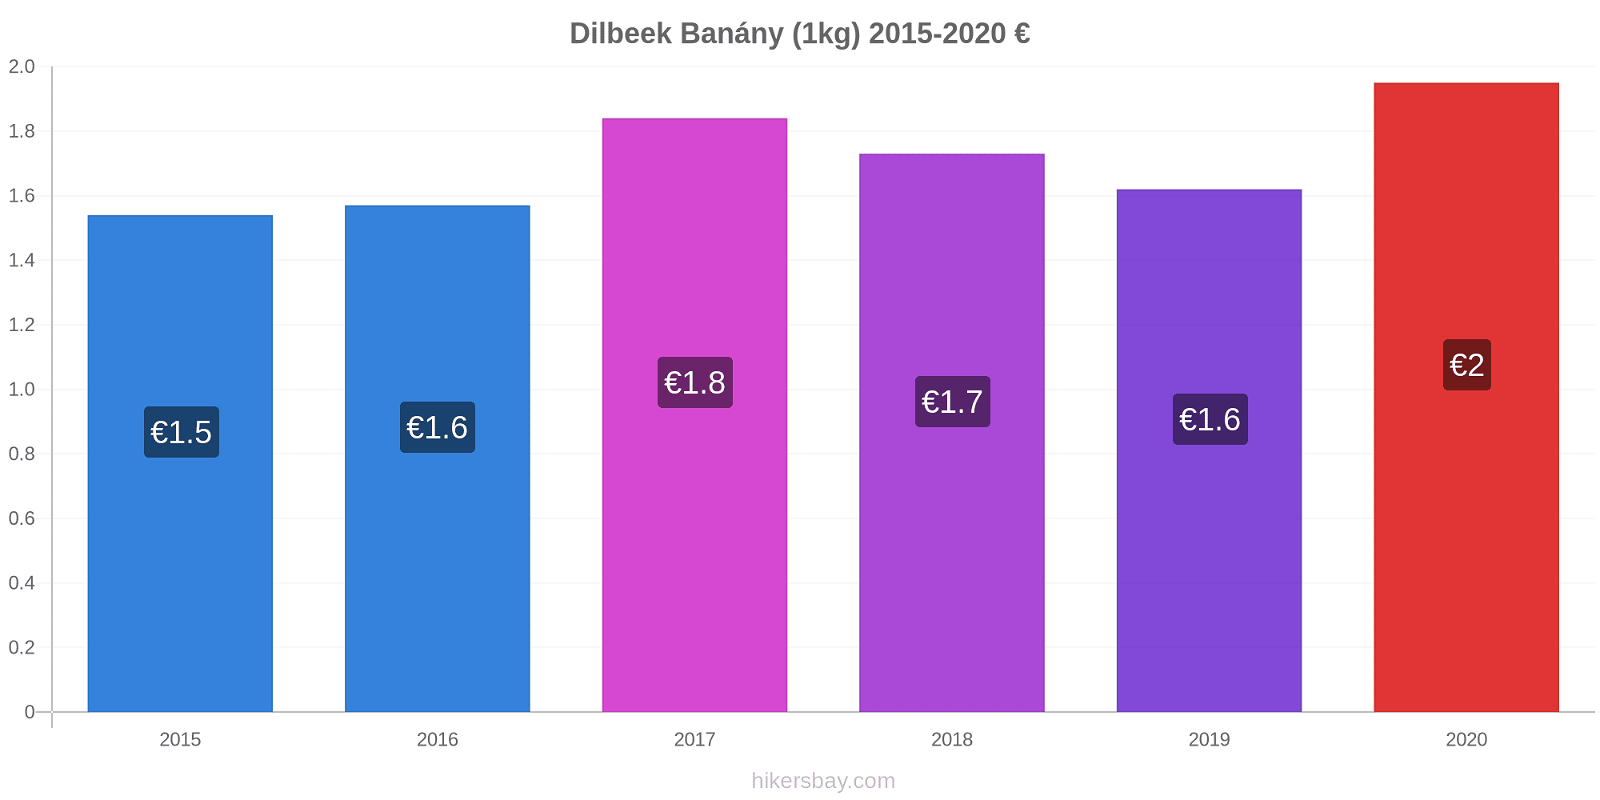 Dilbeek změny cen Banány (1kg) hikersbay.com